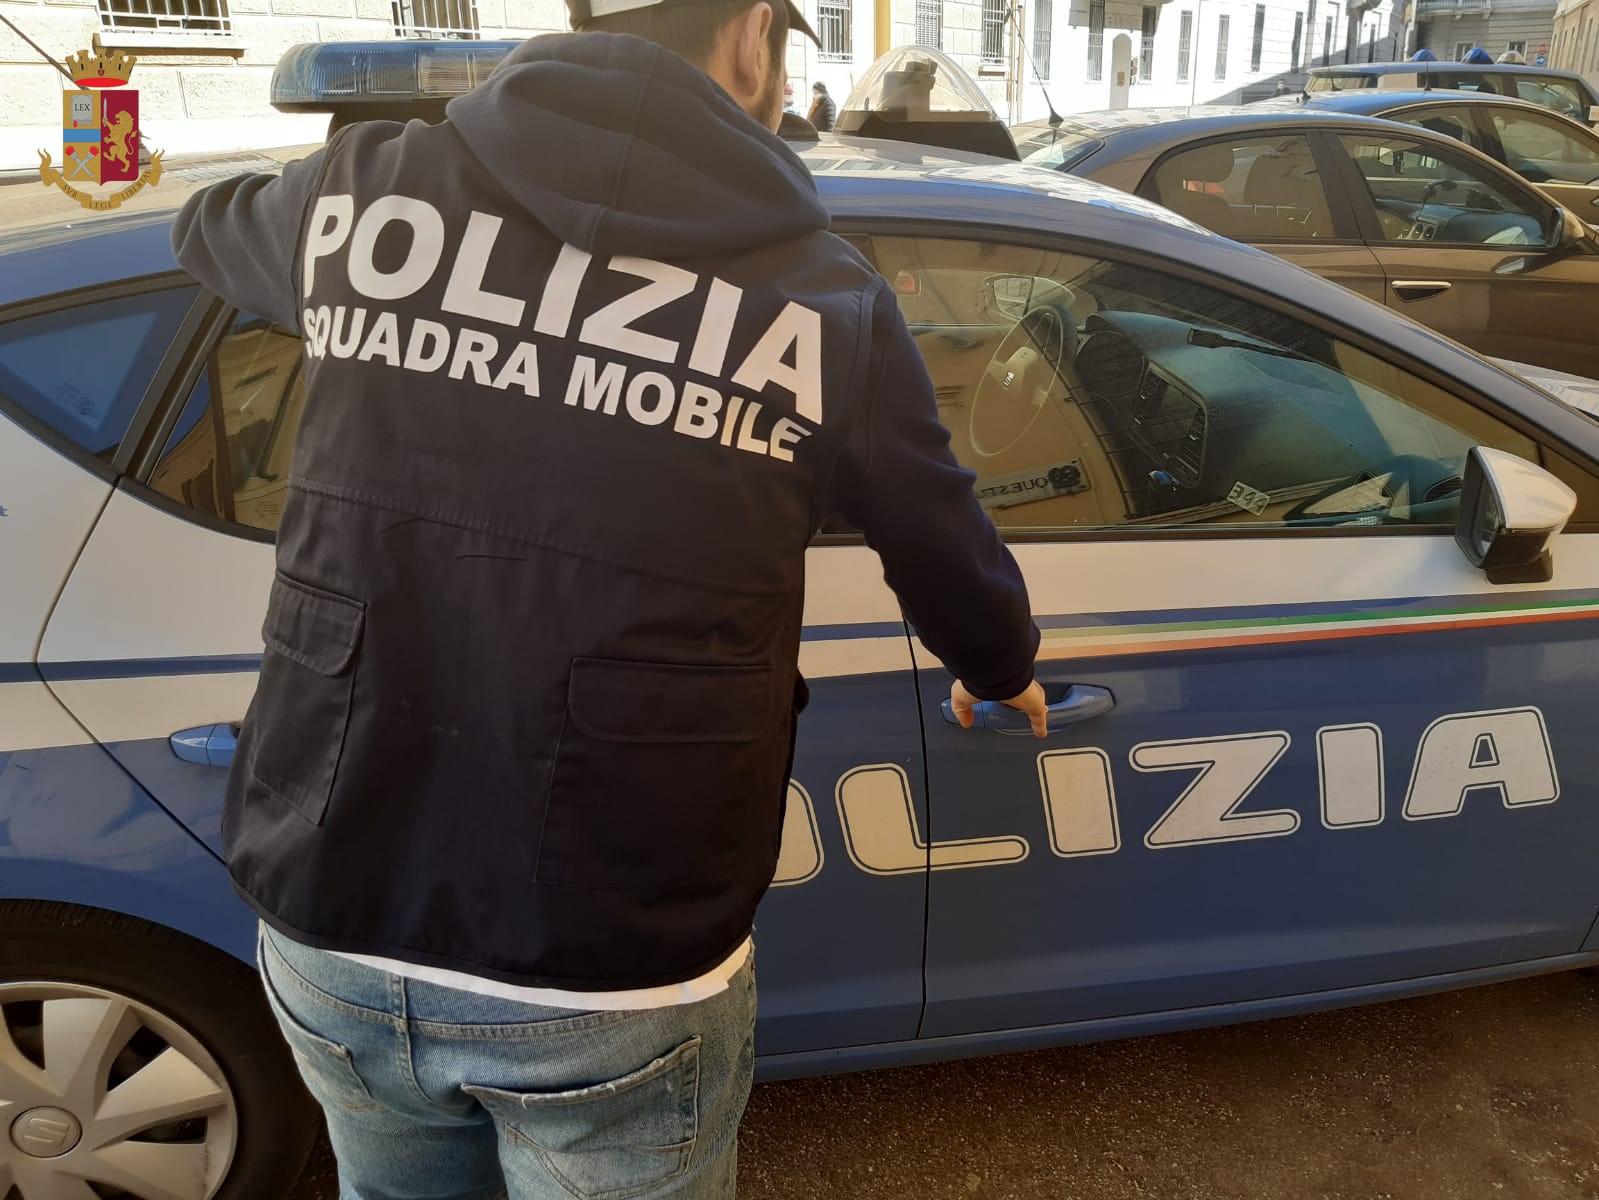 Questura di Cremona: la Squadra Mobile arresta in flagranza, per il reato di evasione, un 51enne italiano.